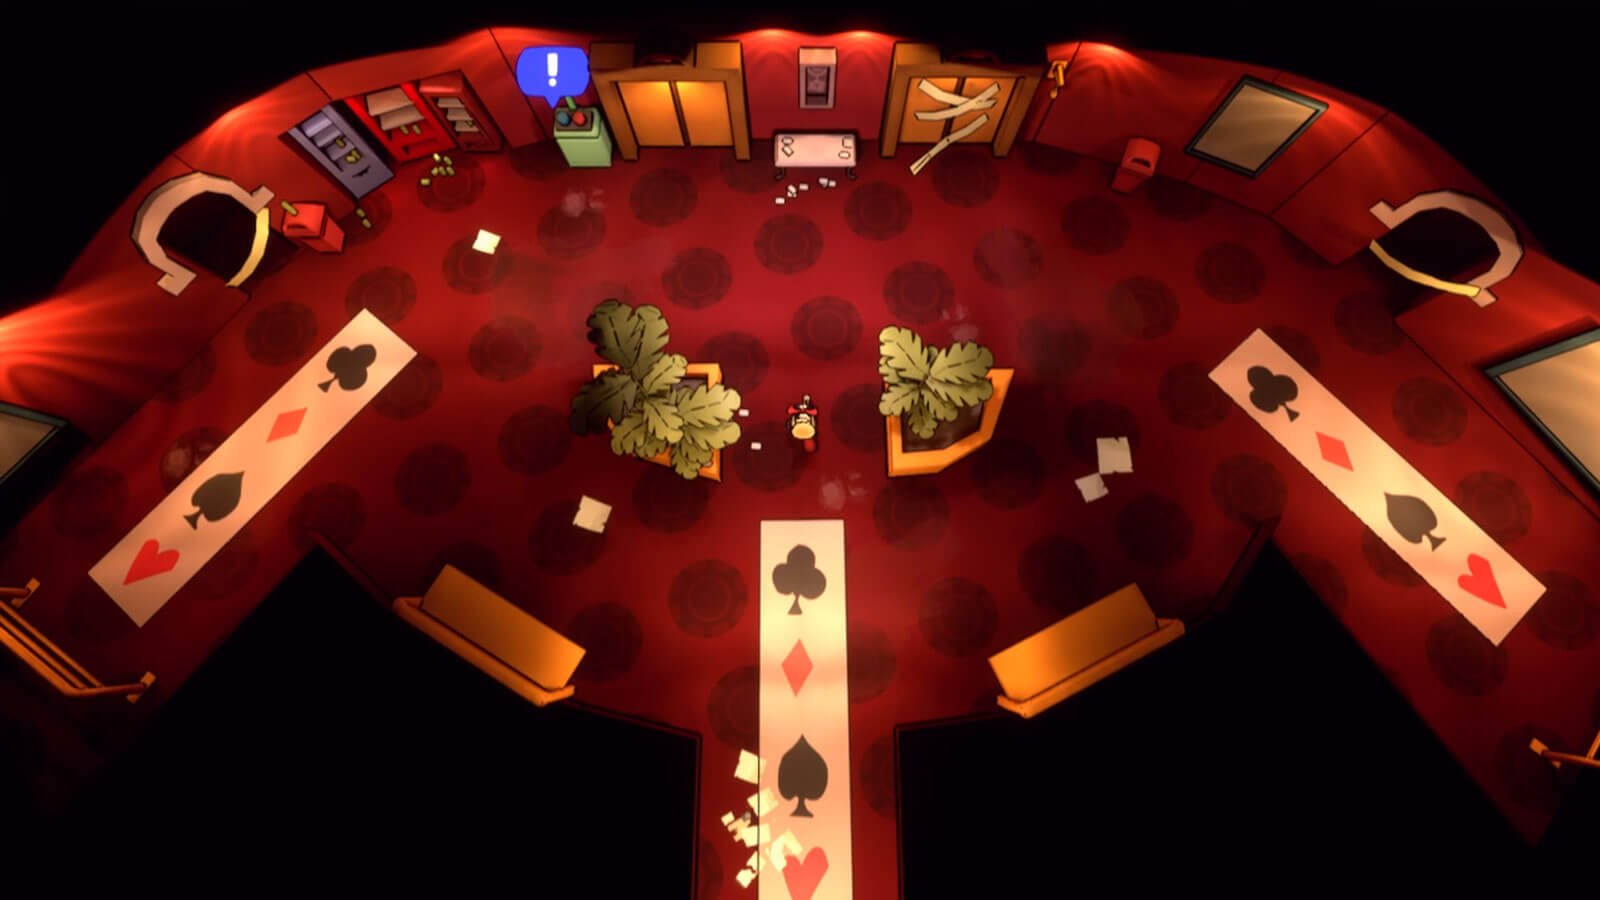 Vista desde arriba del jugador entrando a un hotel con diseños de símbolos de cartas en el suelo